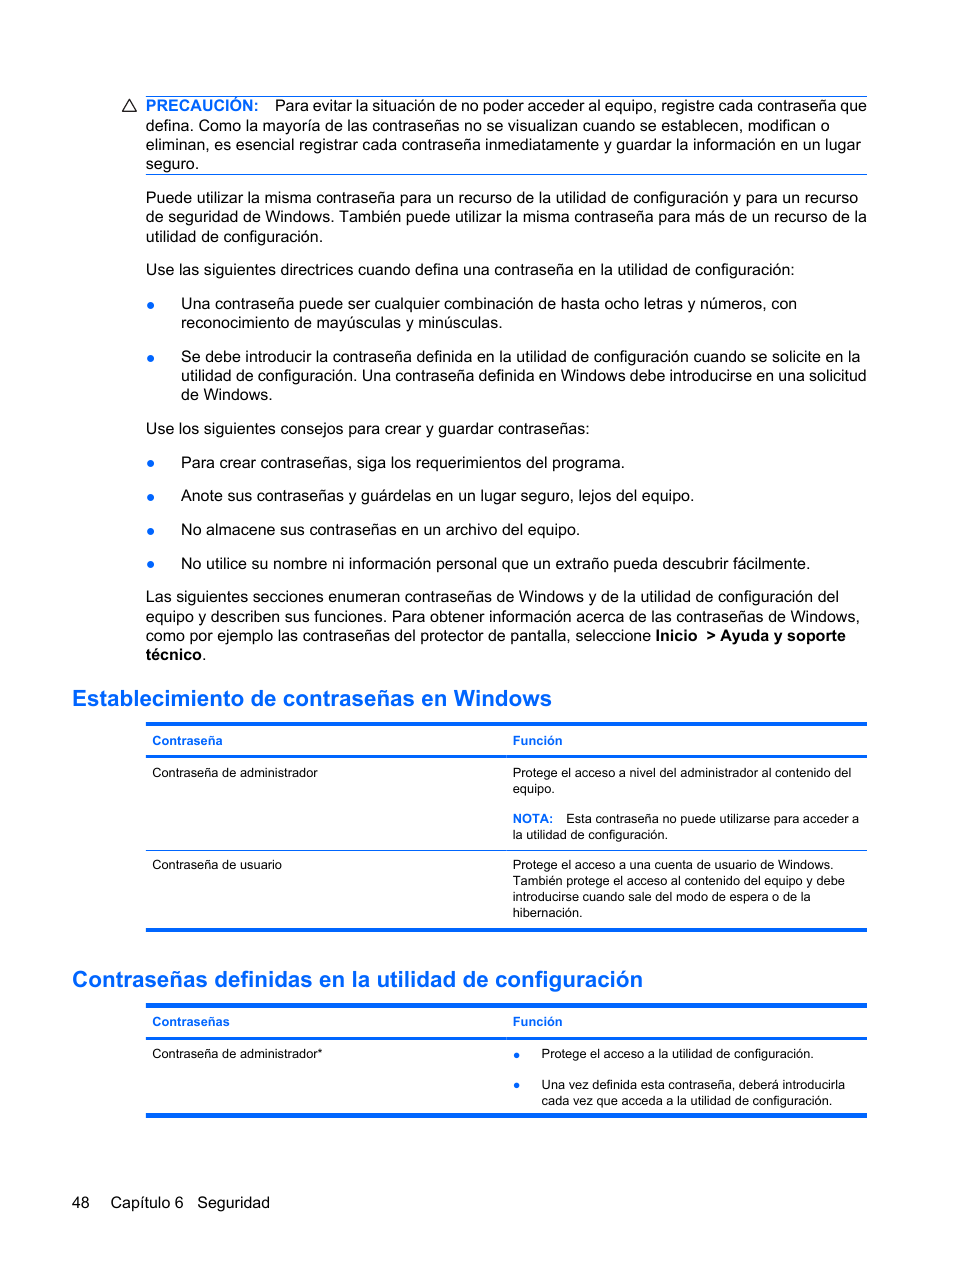 Establecimiento de contraseñas en windows | HP PC miniatura HP 2102 Manual del usuario | Página 56 / 87